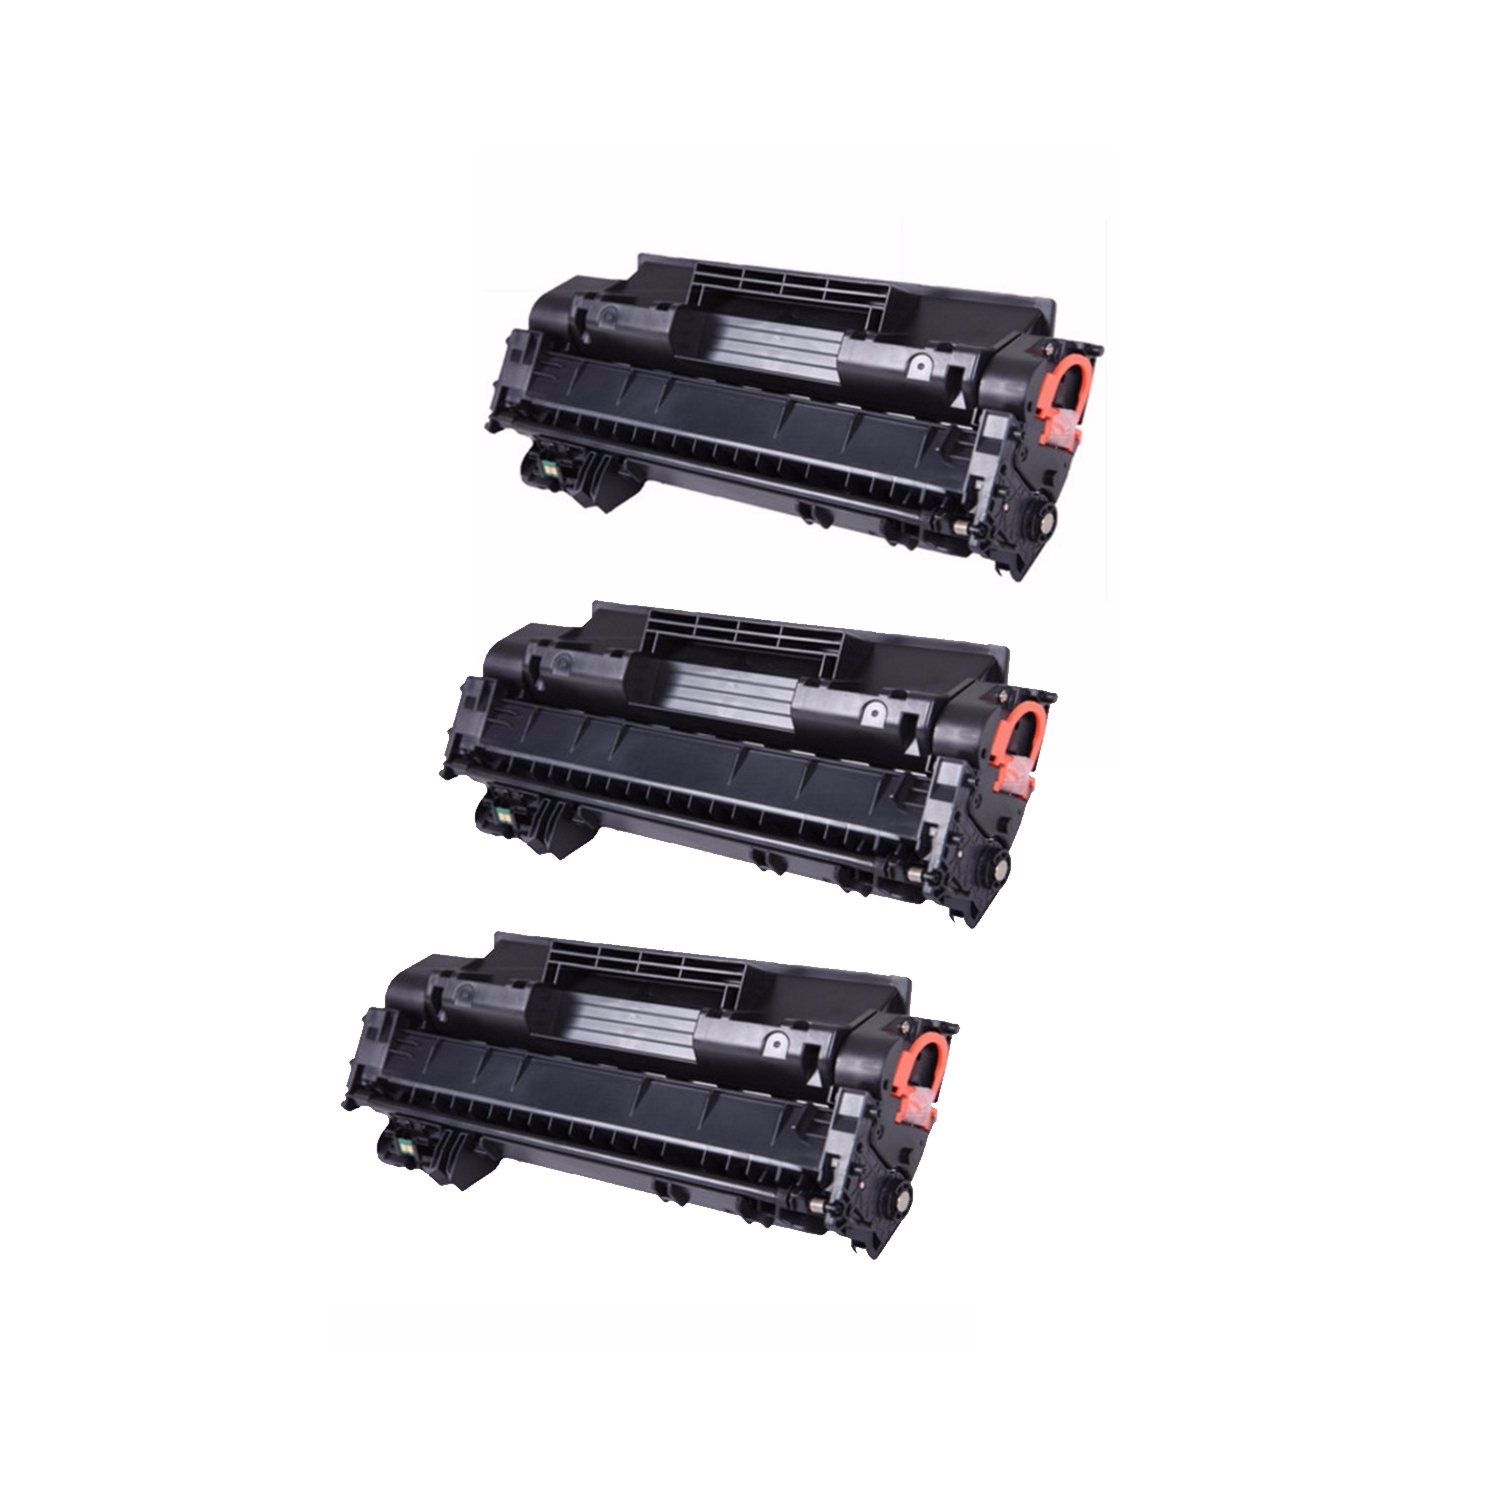 3 PK CRG120 Toner Cartridge Replacement for Canon 120 2617B001AA Canon120 ImageClass D1120,D1150,D1170,D1180,D1320,D1350, D1370,D1520,D1550